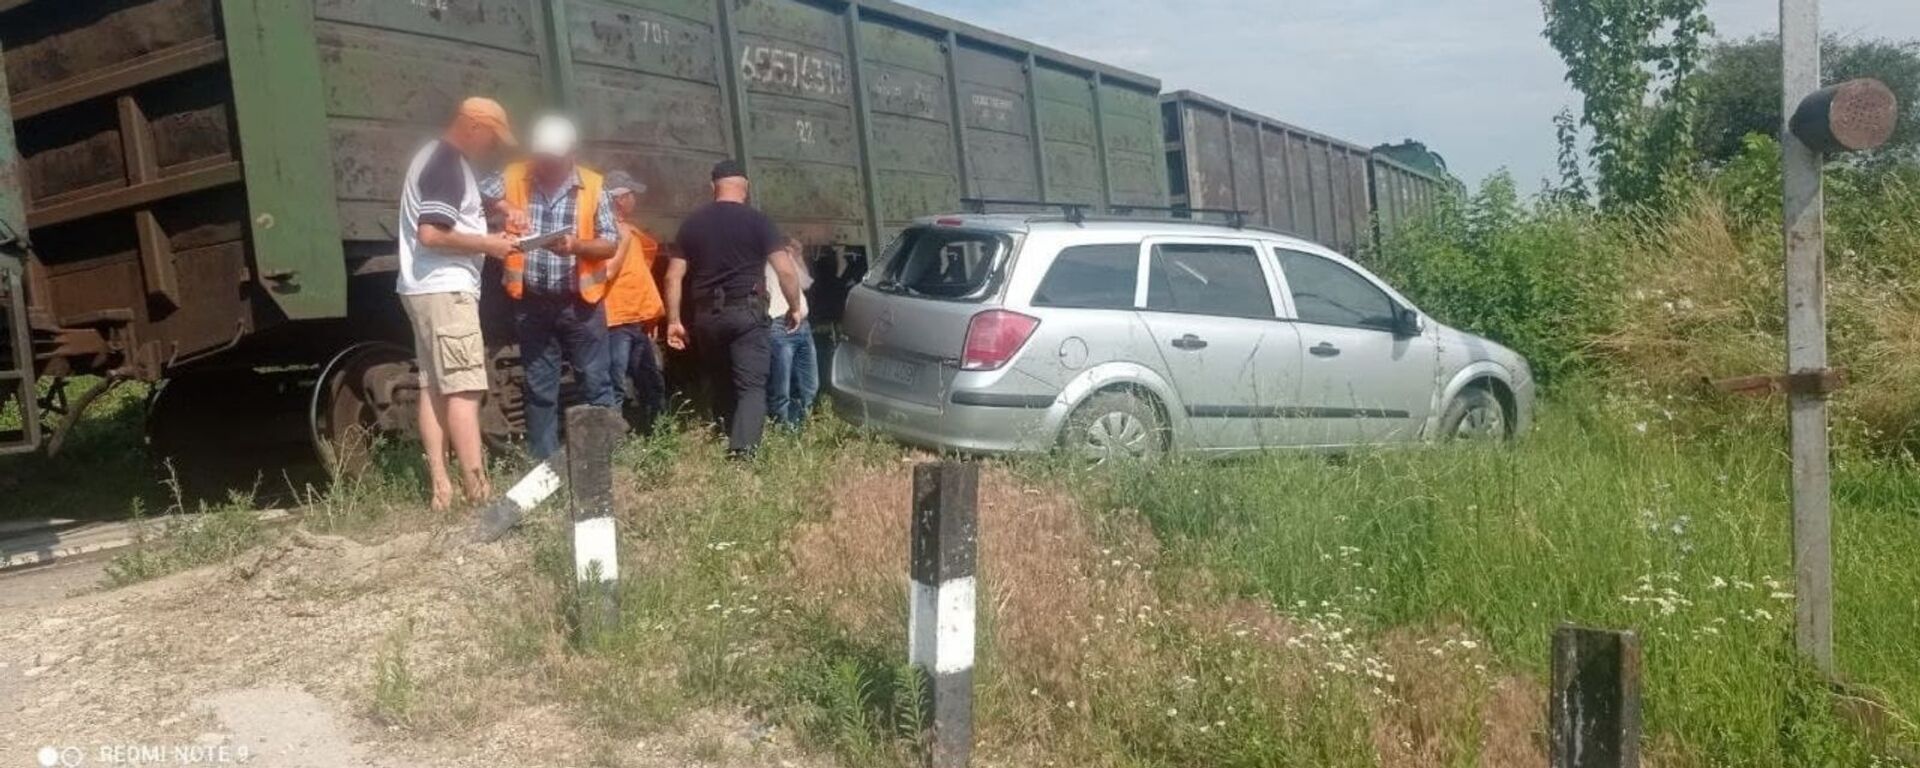 Accident cu implicarea unui tren la Lipcani - Sputnik Moldova, 1920, 13.07.2021